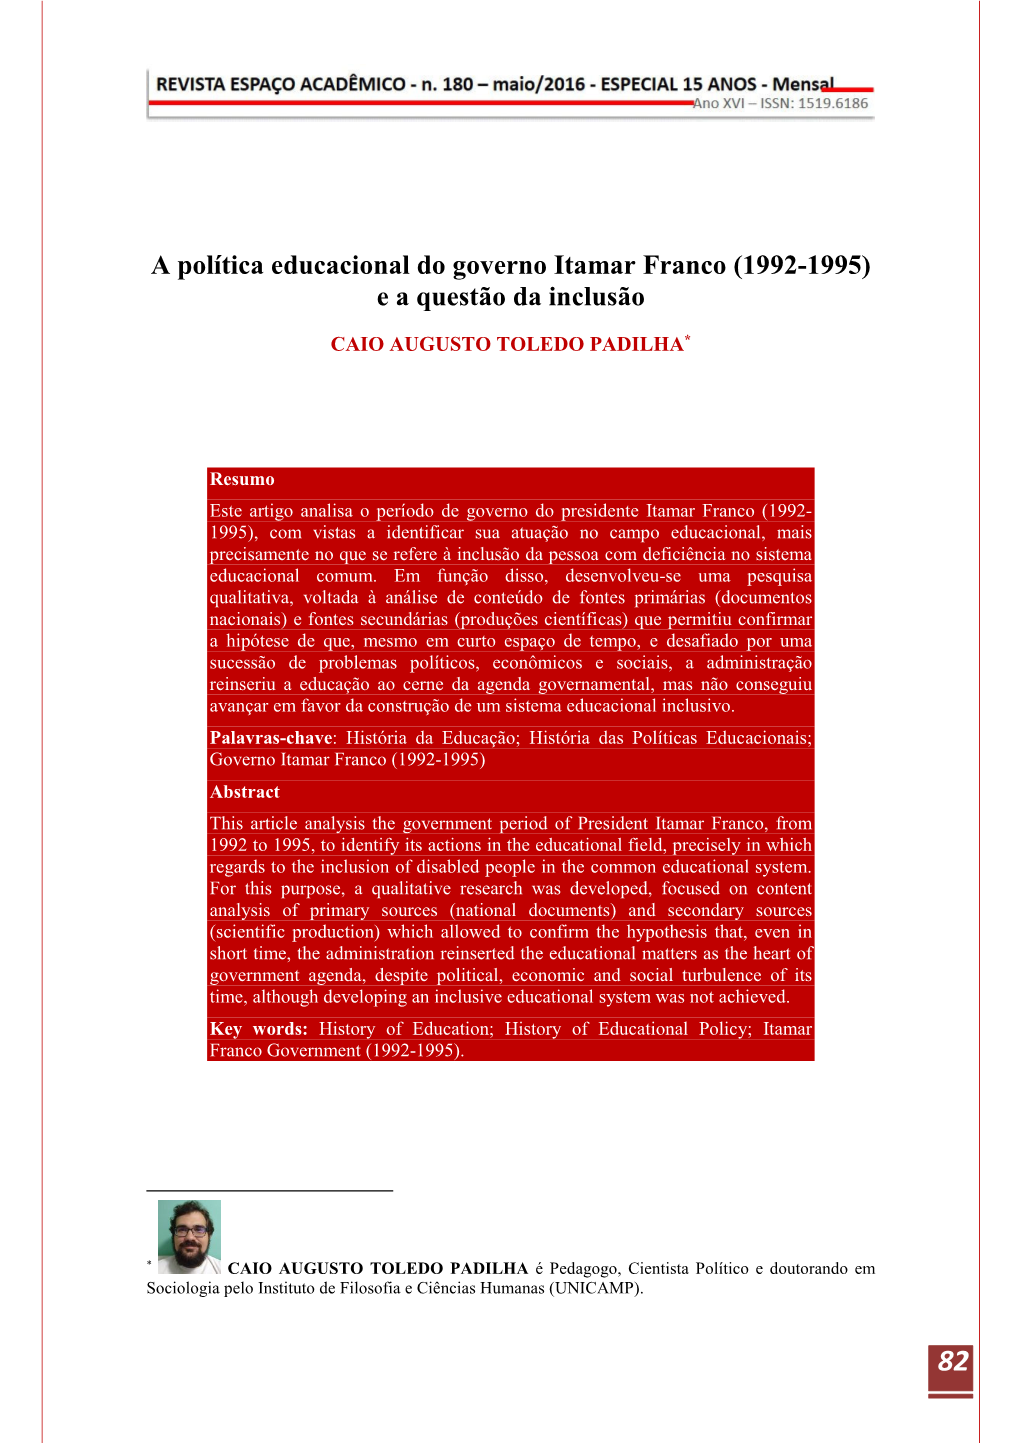 A Política Educacional Do Governo Itamar Franco (1992-1995) E a Questão Da Inclusão